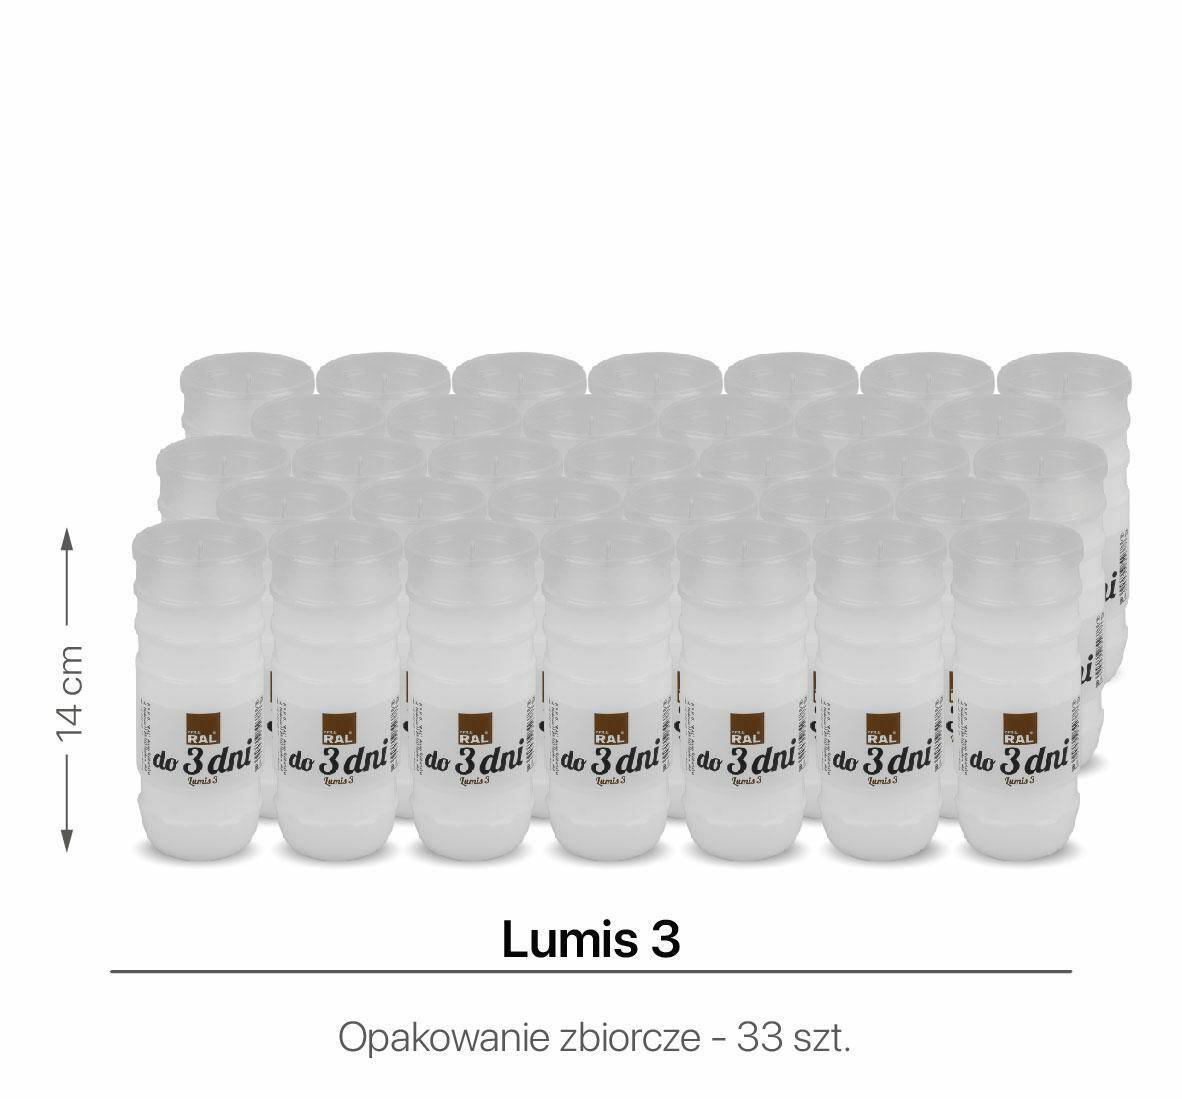 Wkłady do zniczy Lumis 3 14 cm